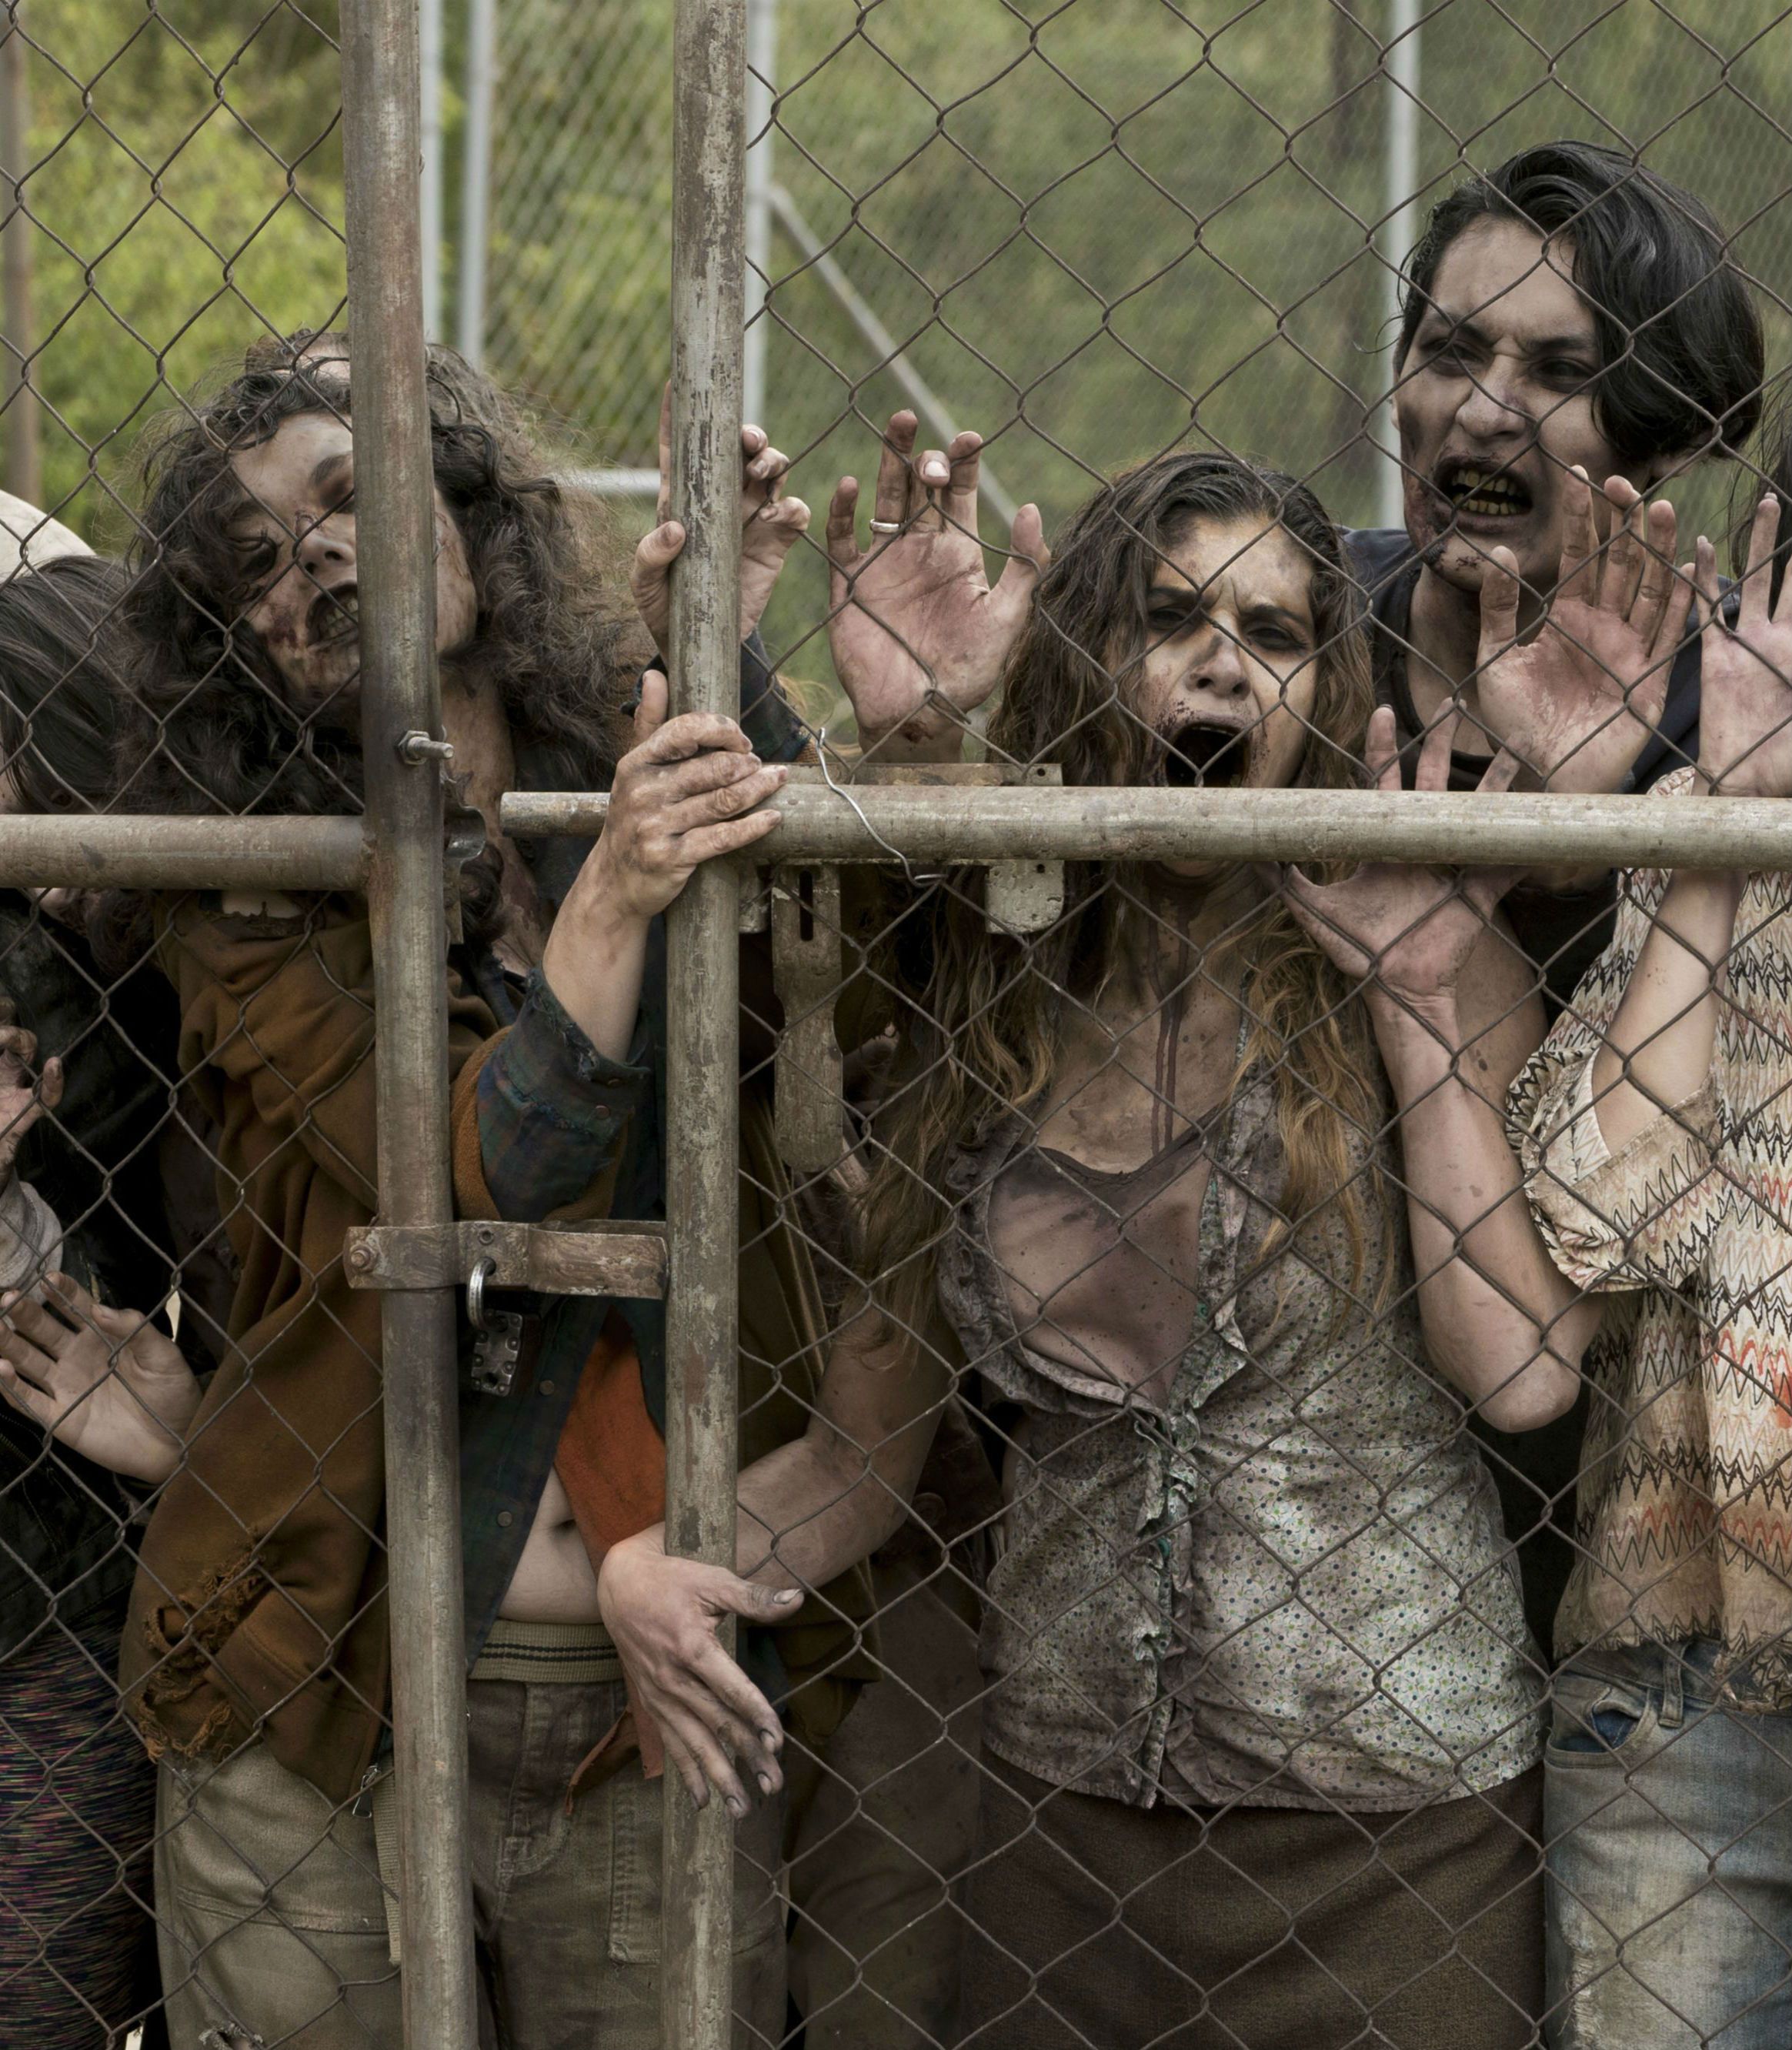 Zombies on AMC Fear the Walking Dead